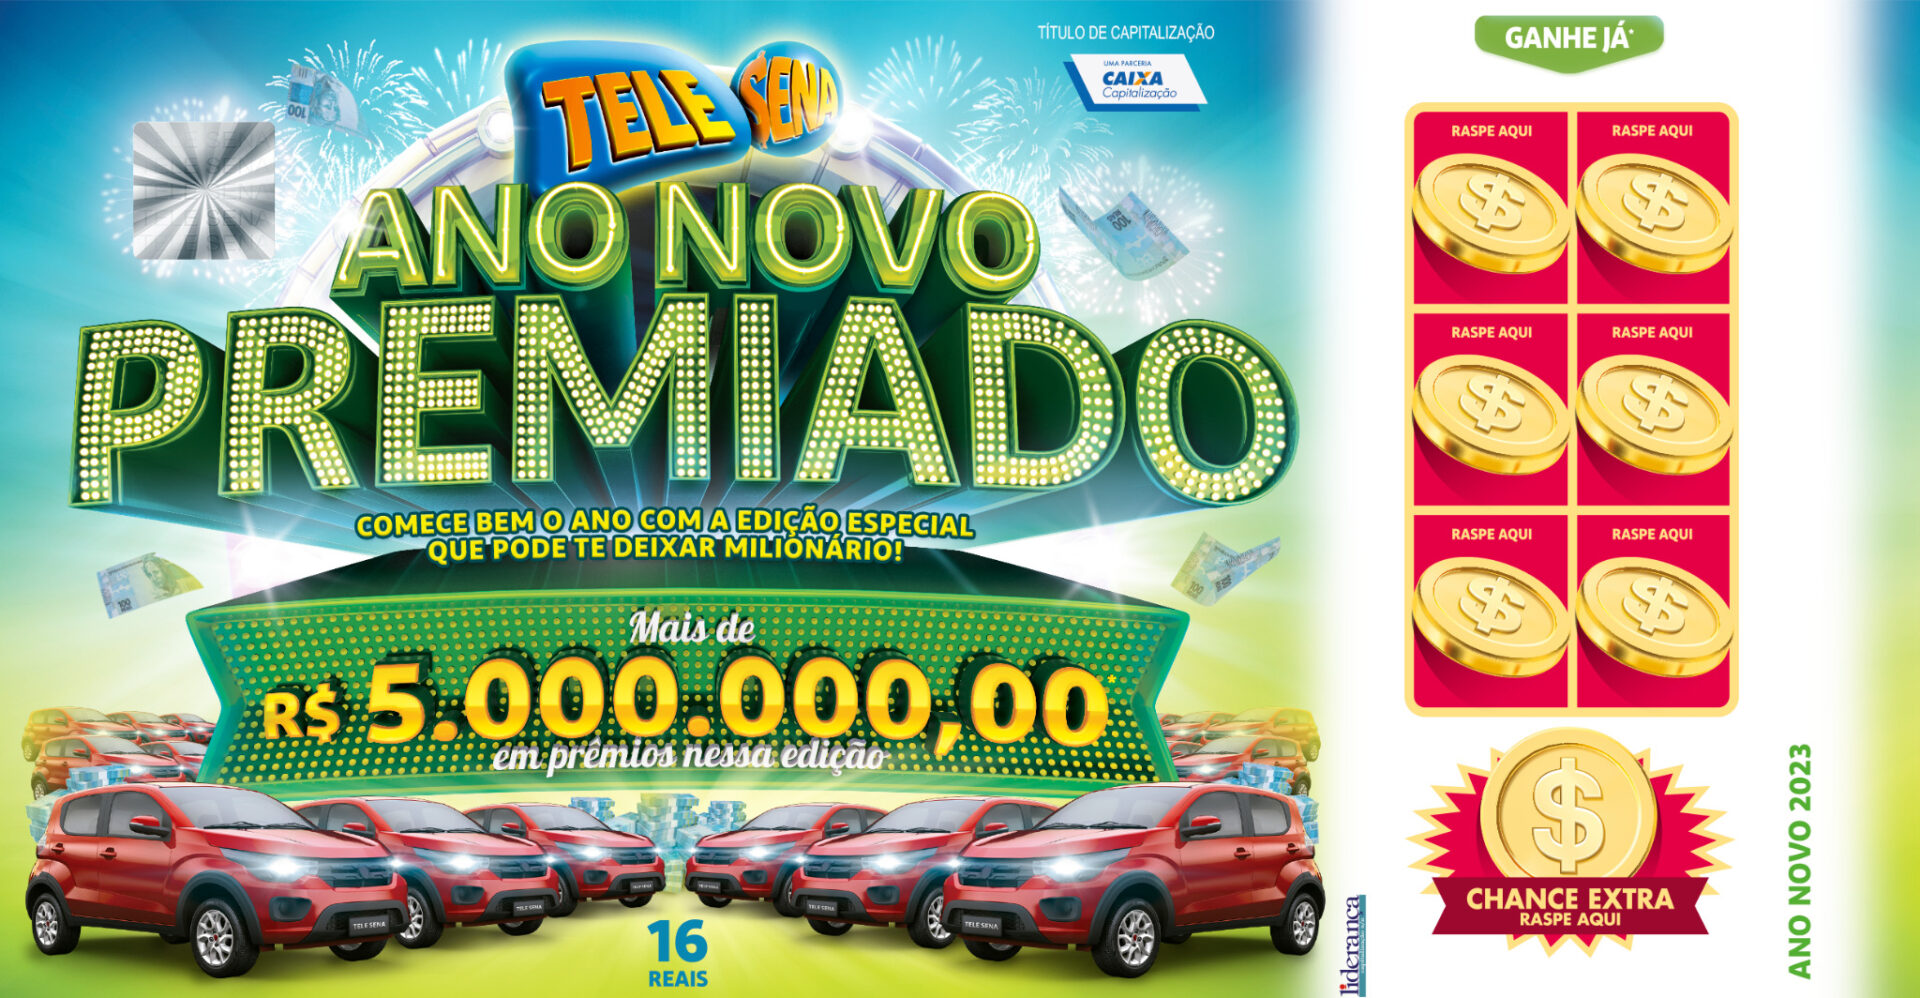 Tele Sena inicia o ano com campanha de Ano Novo estrelada pelo Alexandre Pires e Ana Clara, com premiações de até R$1 milhão